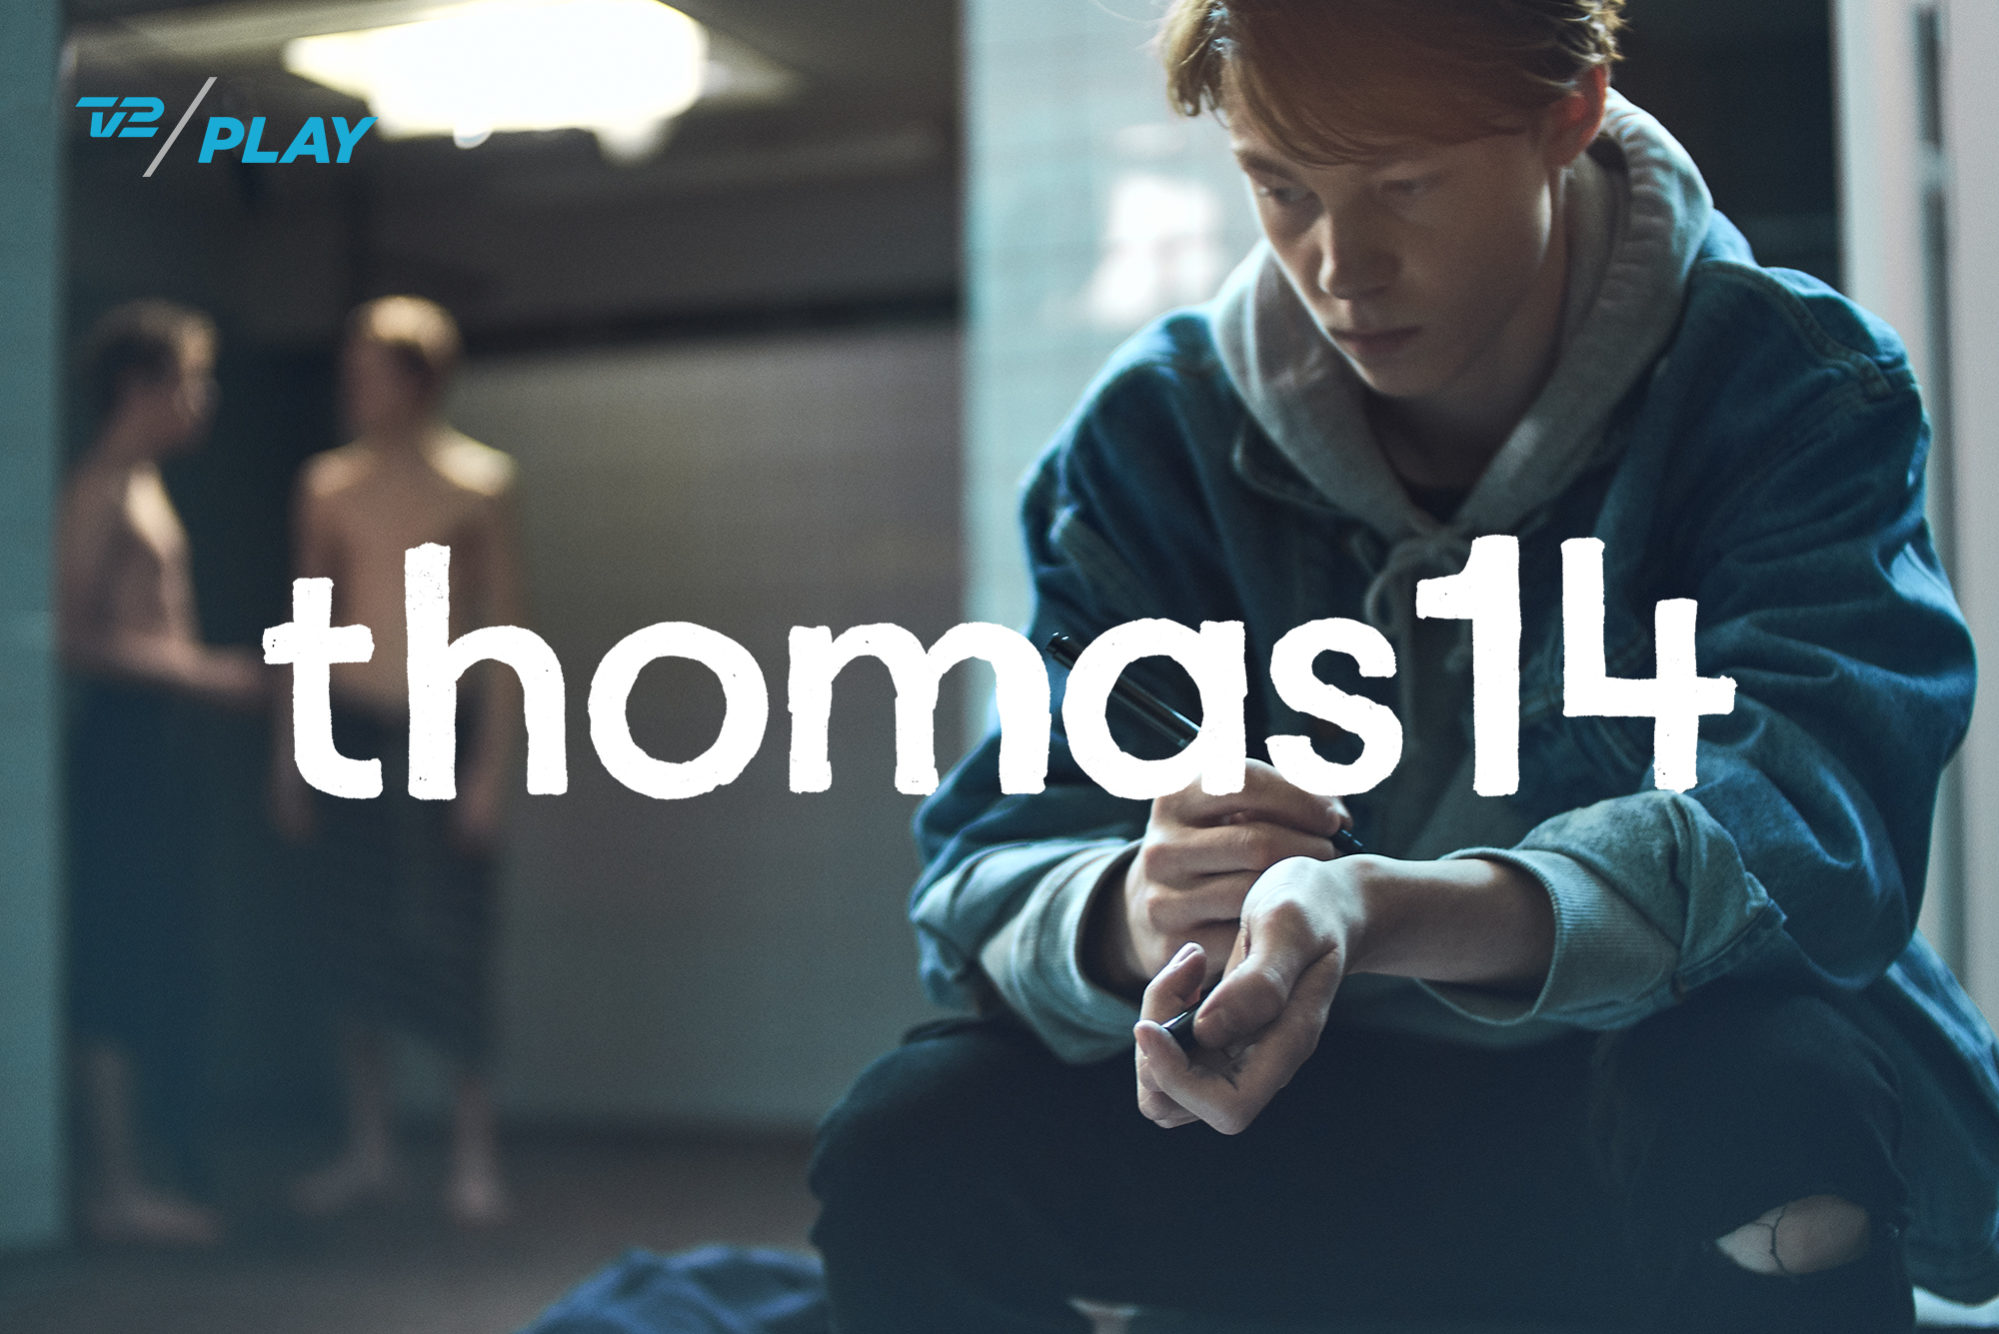 Thomas14_DSF3611_Logo_Yannick Wolff